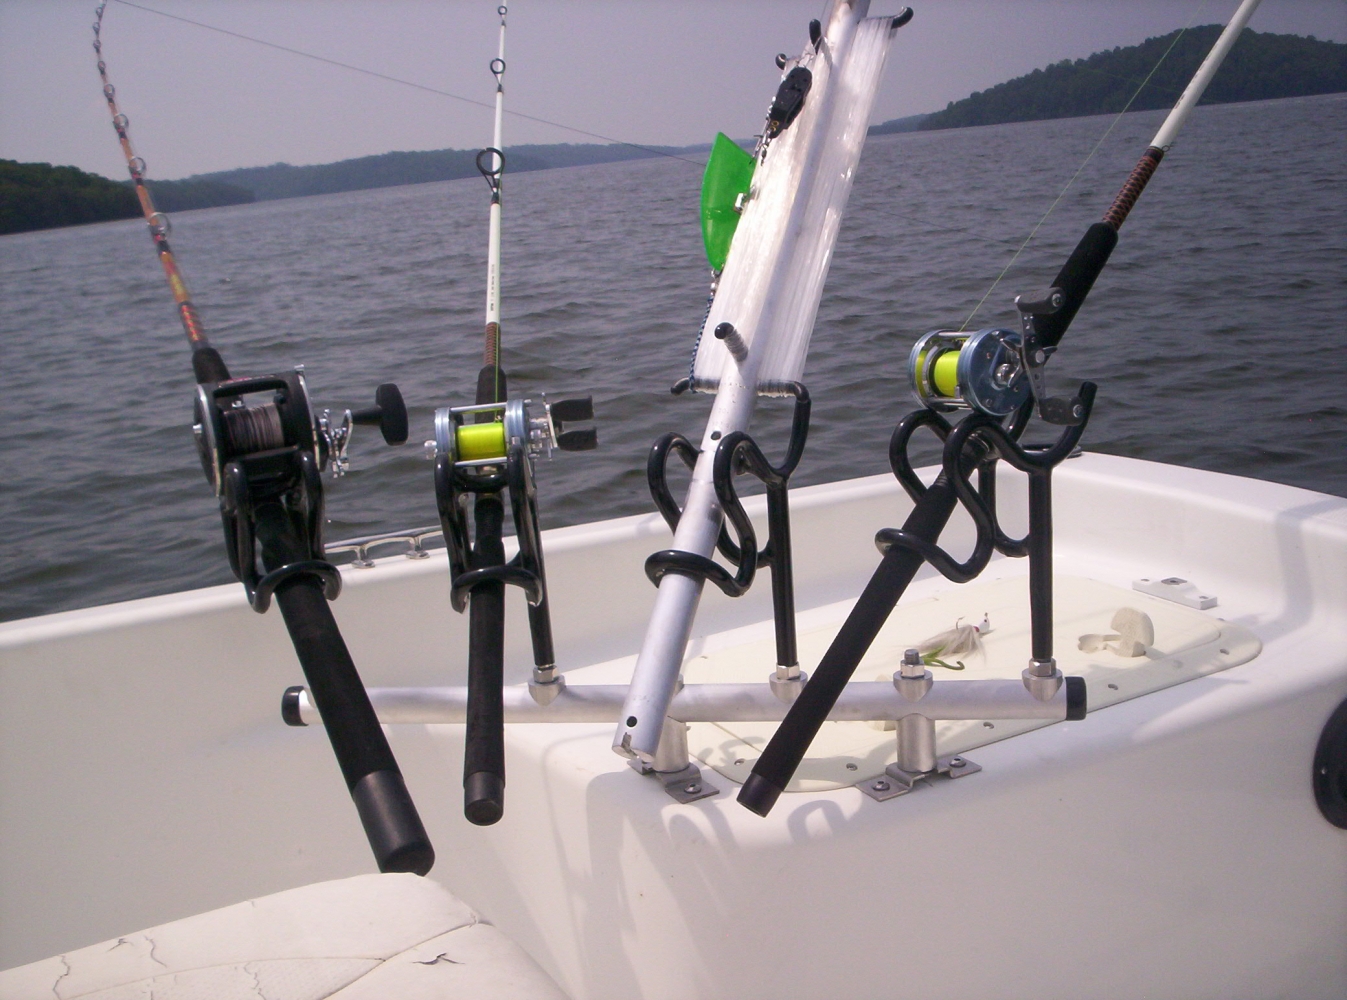 fishing rod holder for boat, camper trailer or roof rack